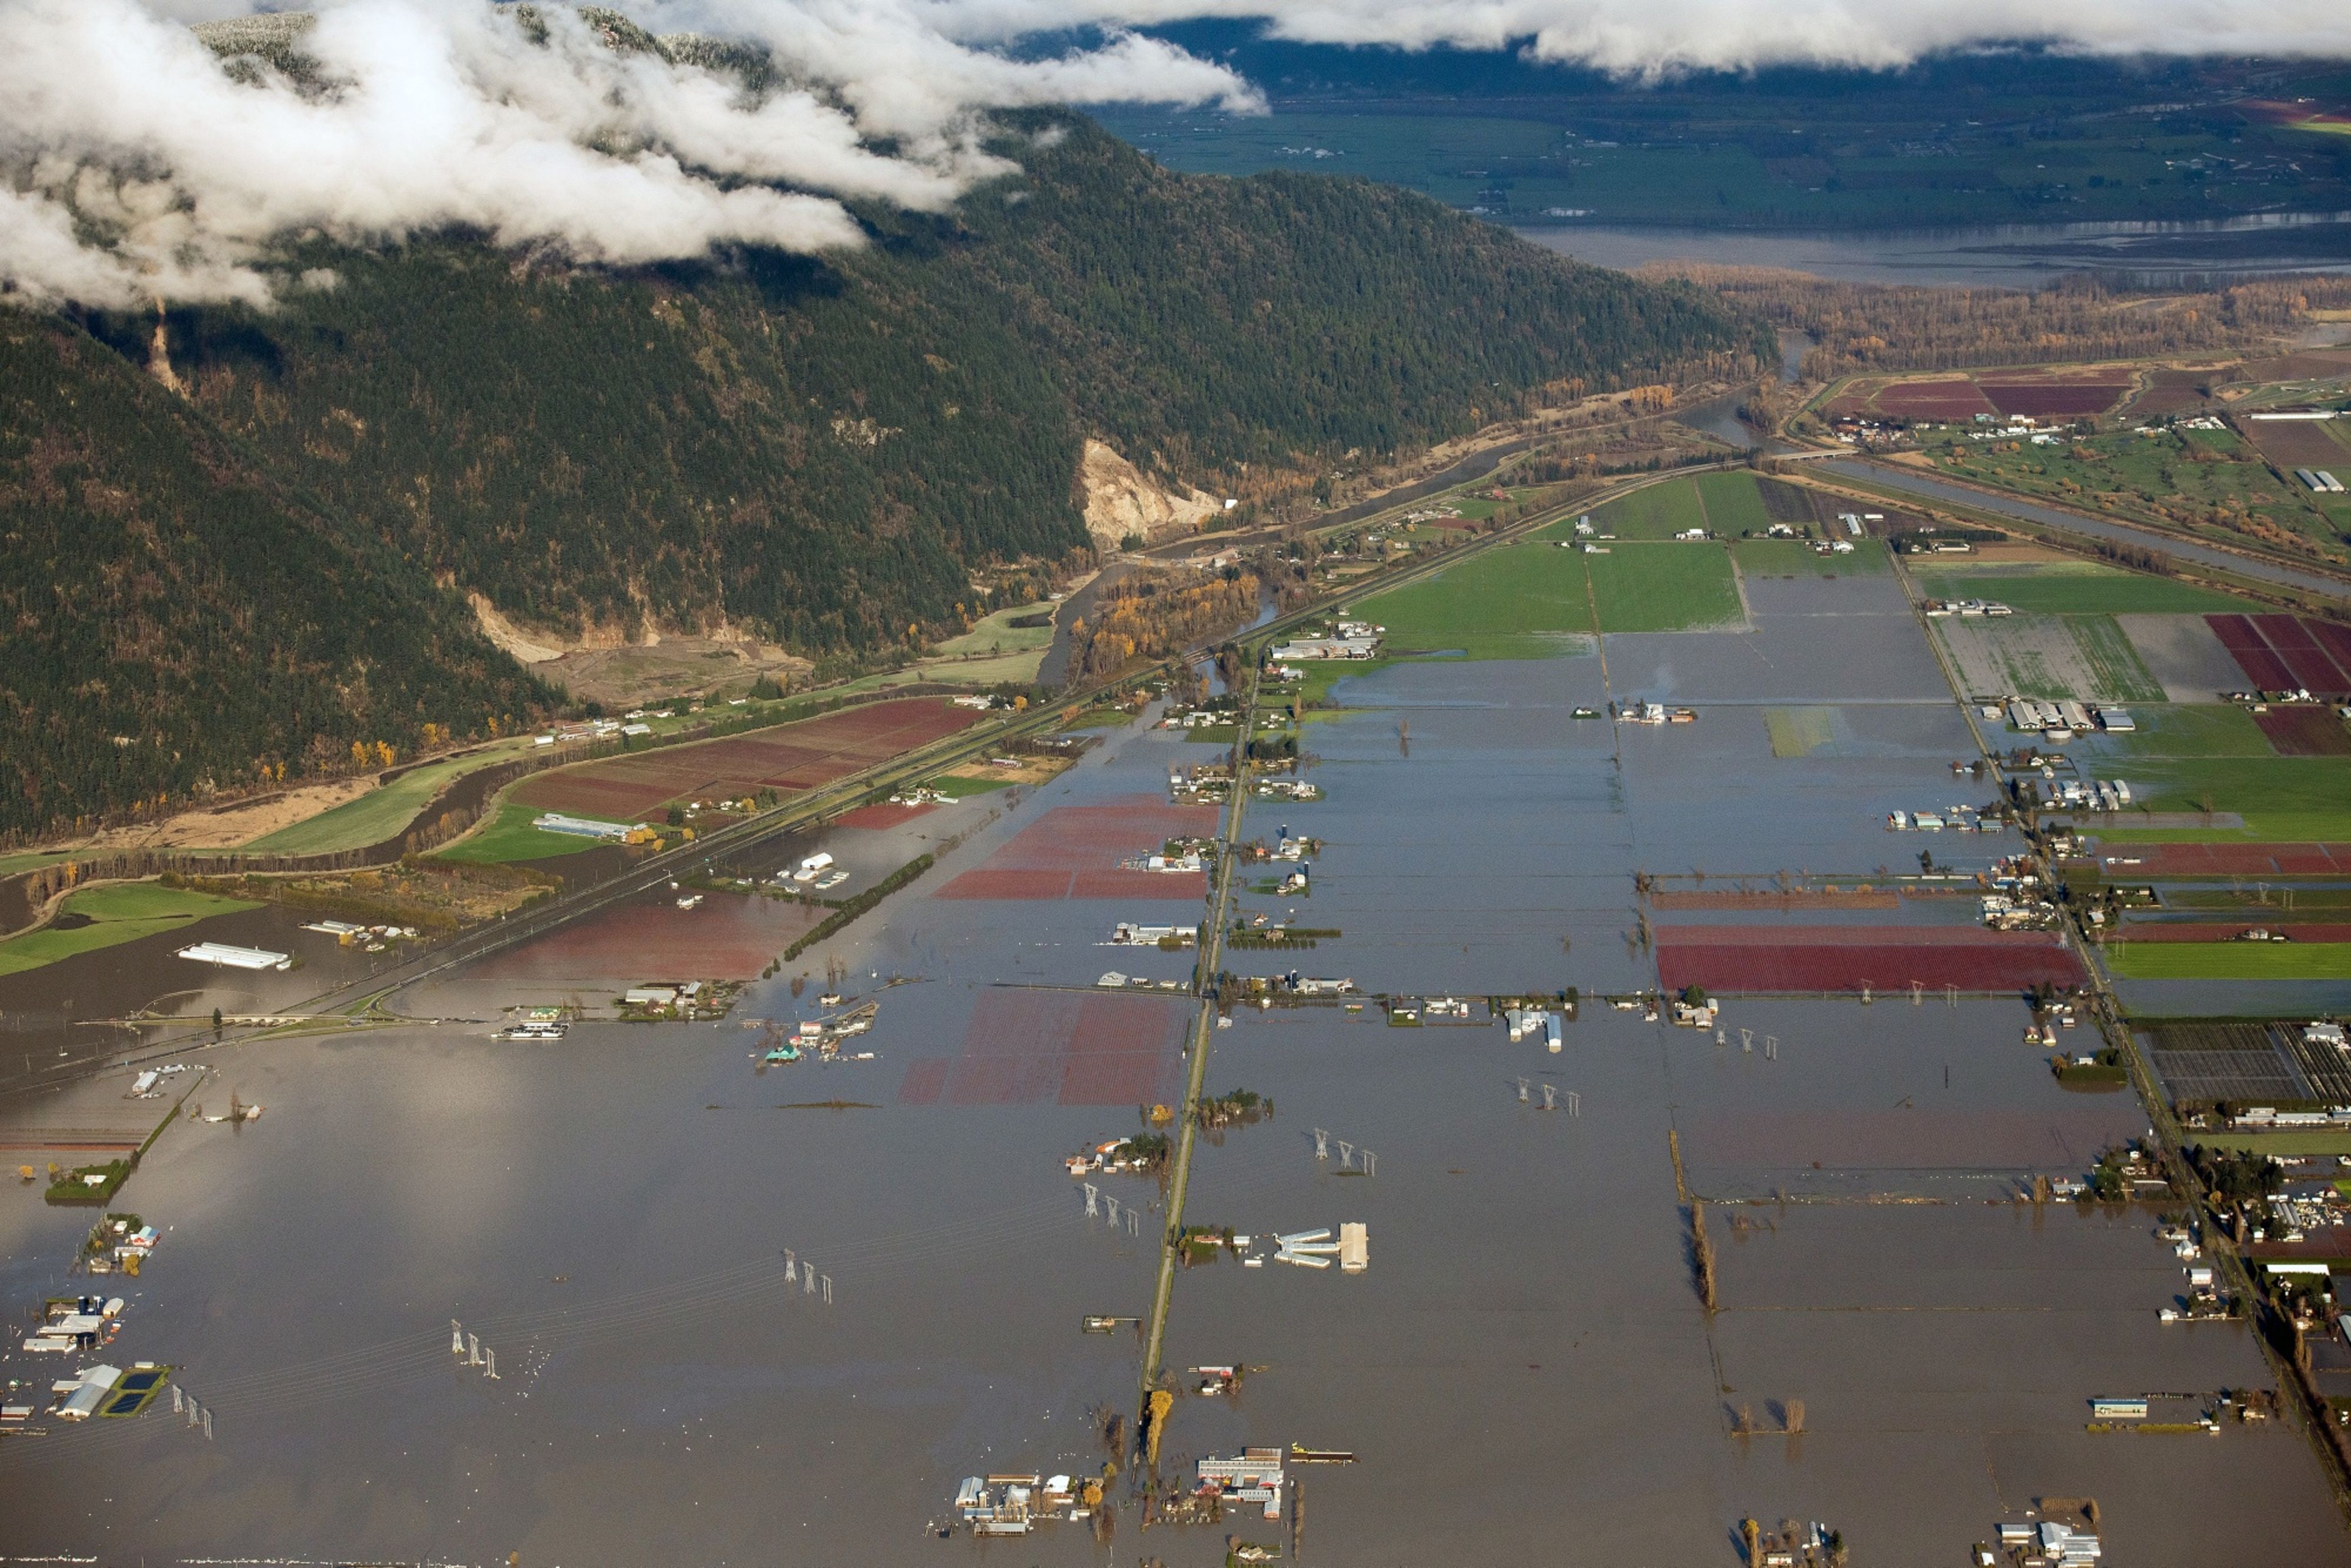 Canadas Government Pledges Help for Flooded B.C. Amid More Rain